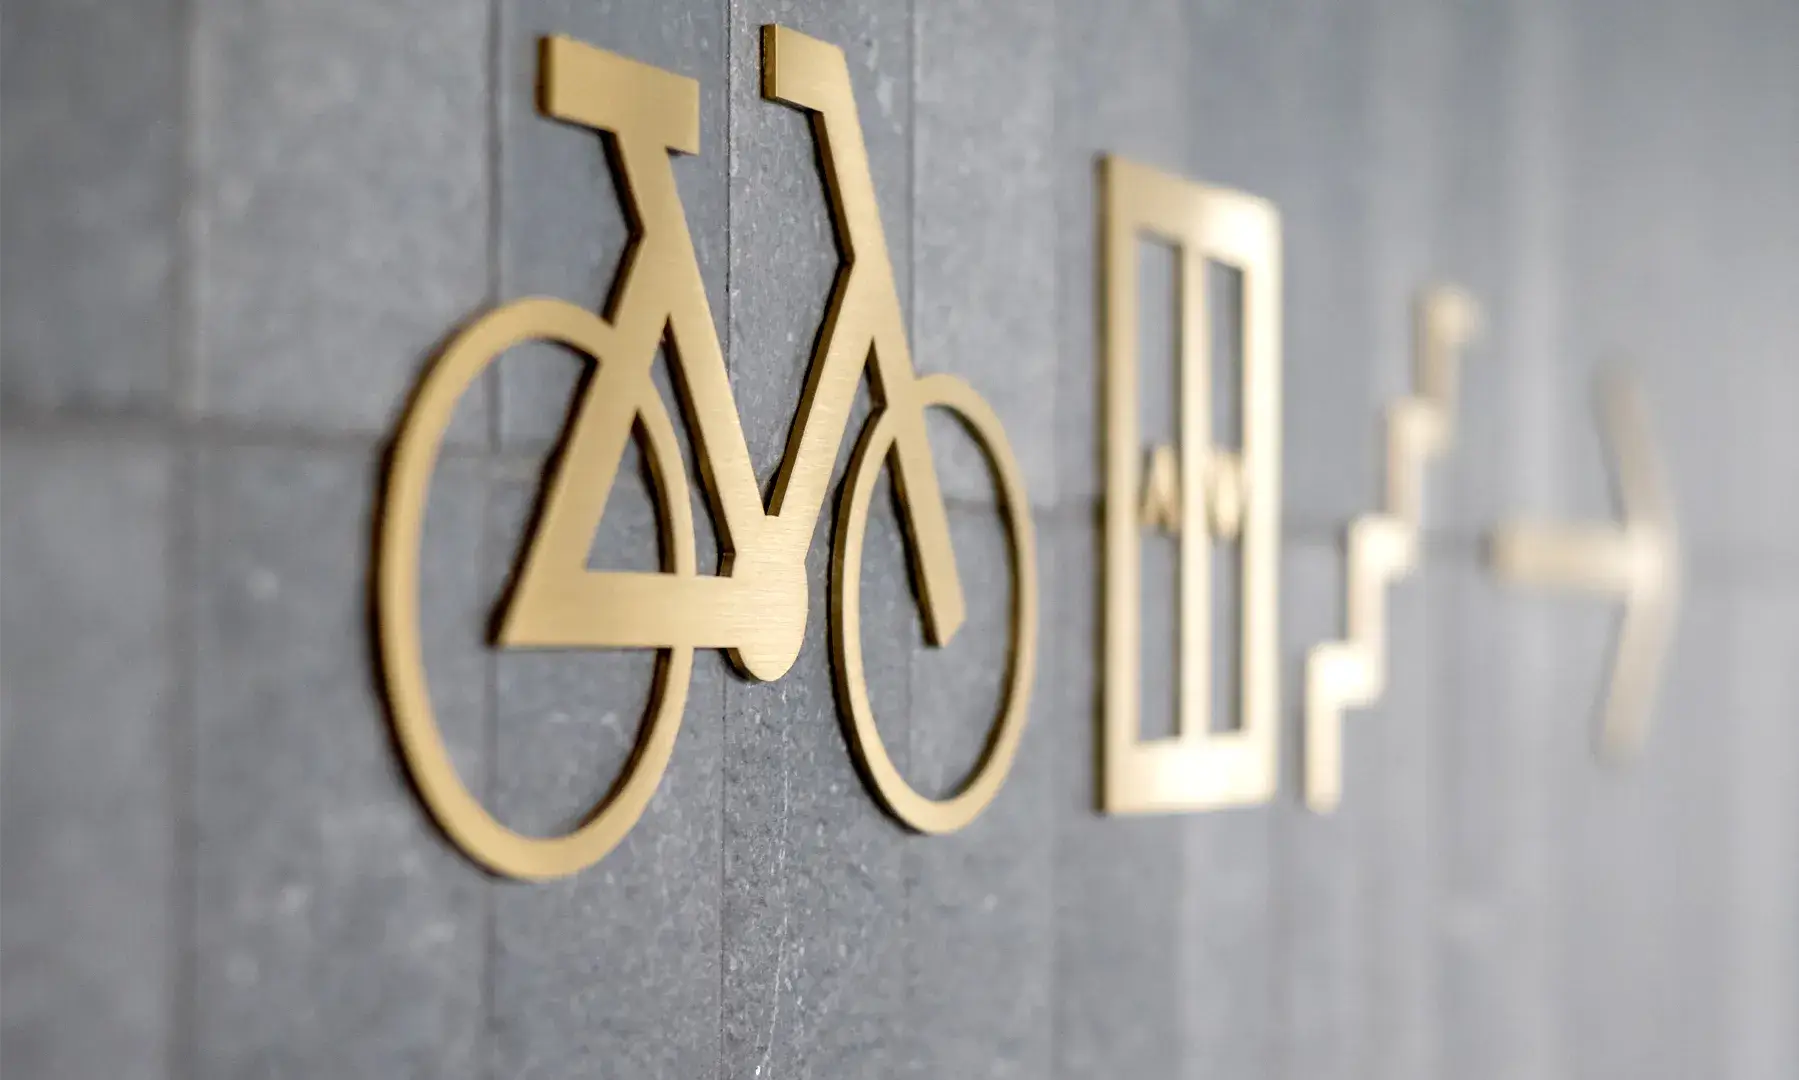 Cartello per bicicletta in metallo con pittogrammi